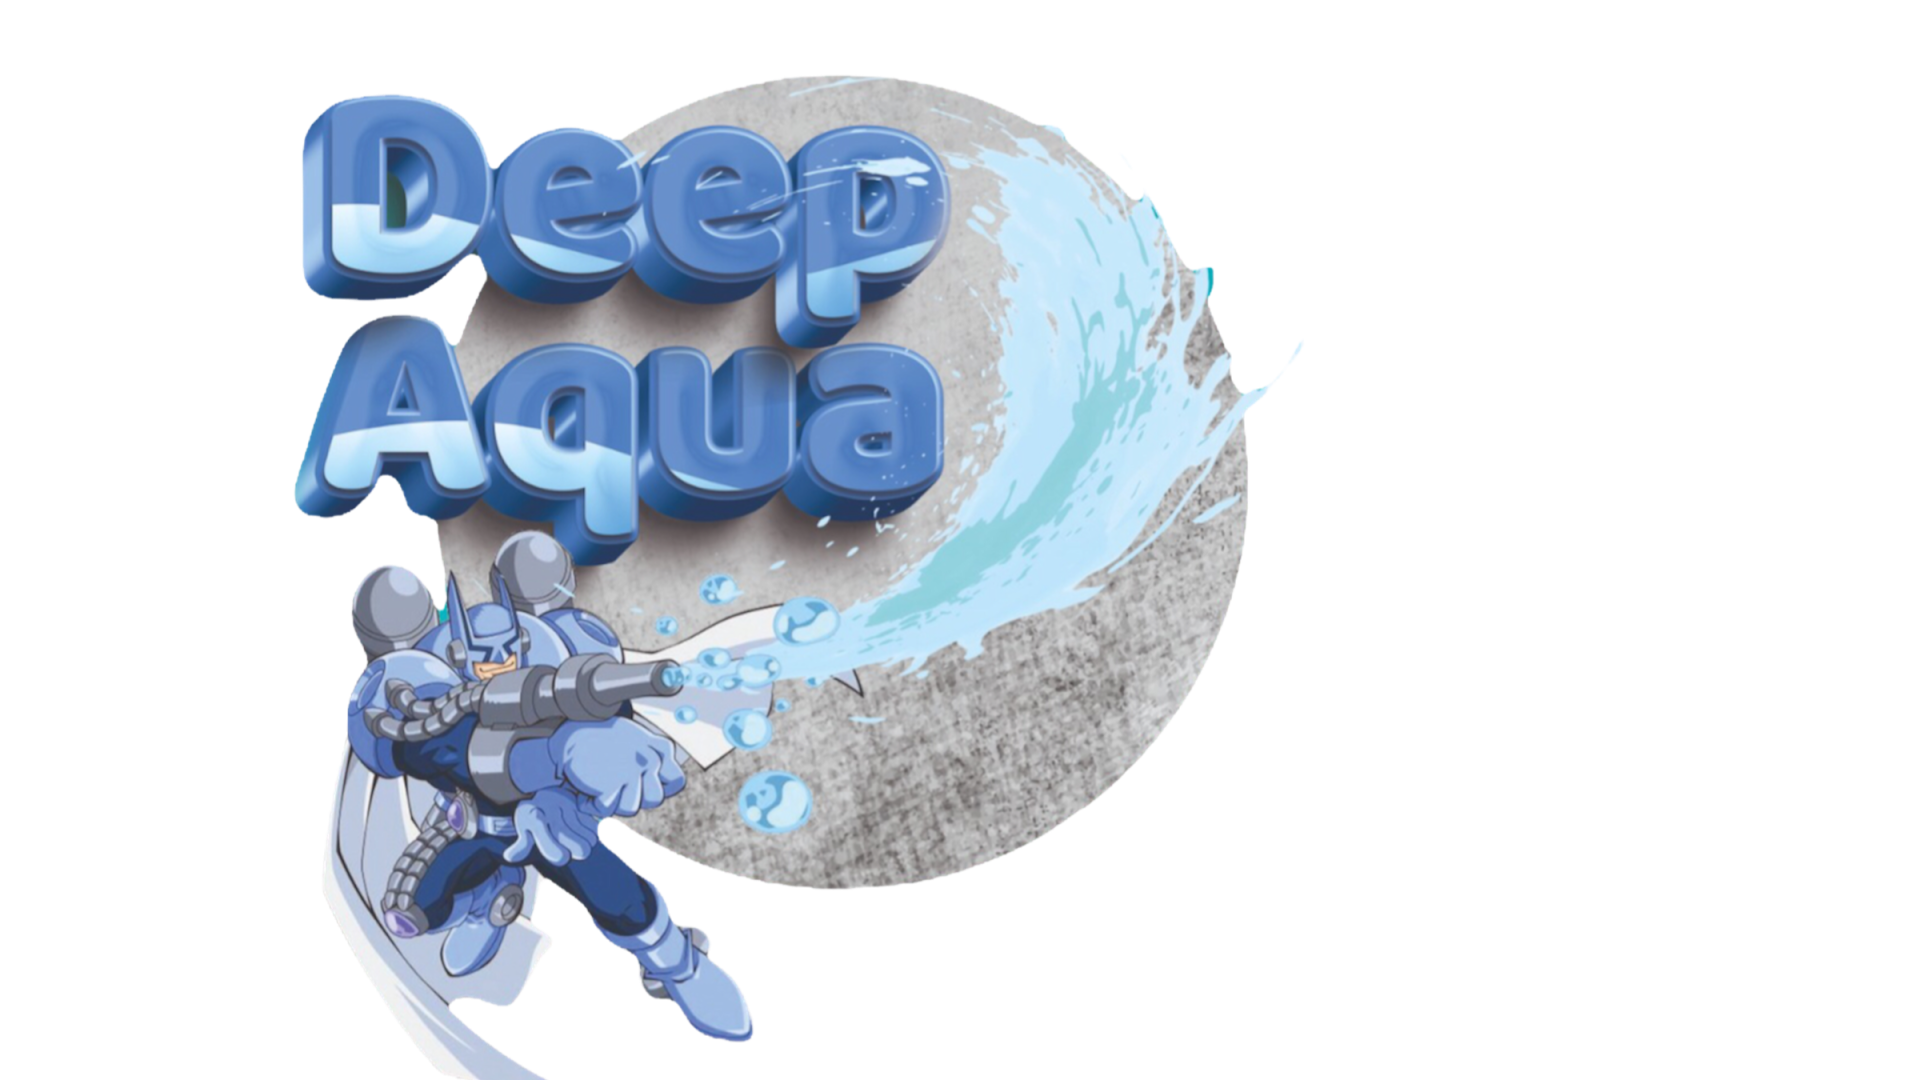 Deep aqua